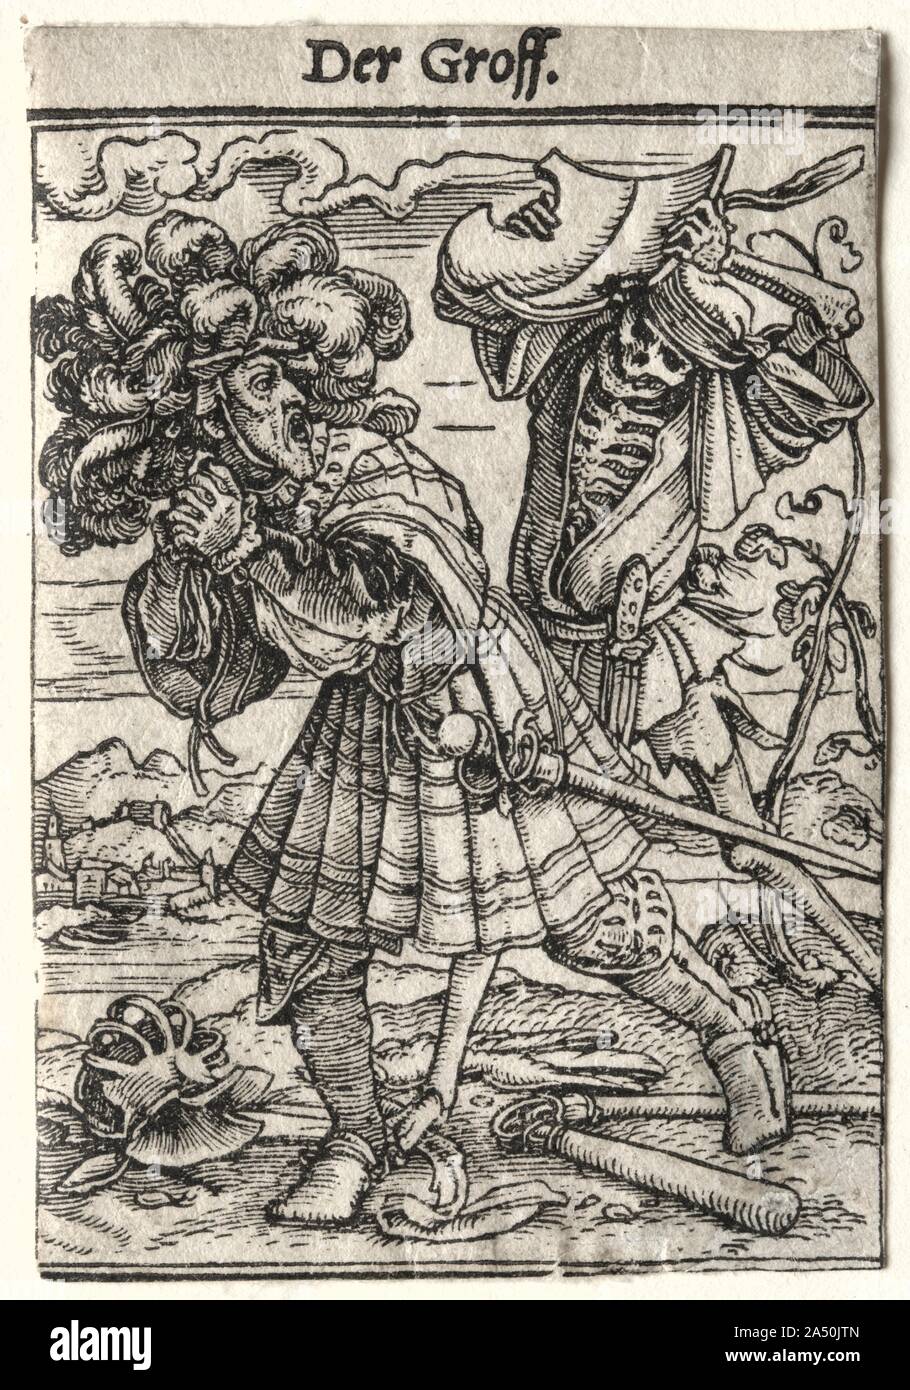 Danza di morte: Earl, c. 1526. Danza di morte è la più celebre serie di xilografie progettato da Holbein. Il quarantuno isolati sono stati tagliati da Hans L&#xfc;tzelburger negli anni immediatamente prima della sua morte nel 1526, anche se il set non è stato pubblicato fino al 1538. La Danza della morte è nato come un dramma nella metà del XIV secolo. In seguito i grandi flagelli come la peste nera, questi giochi hanno avuto luogo in un cimitero o sagrato. Attori, vestito in costumi pallido dipinte a somigliare a scheletri, personificata morte e convocato un gruppo di persone provenienti da tutte le classi sociali in un dancelike pr Foto Stock